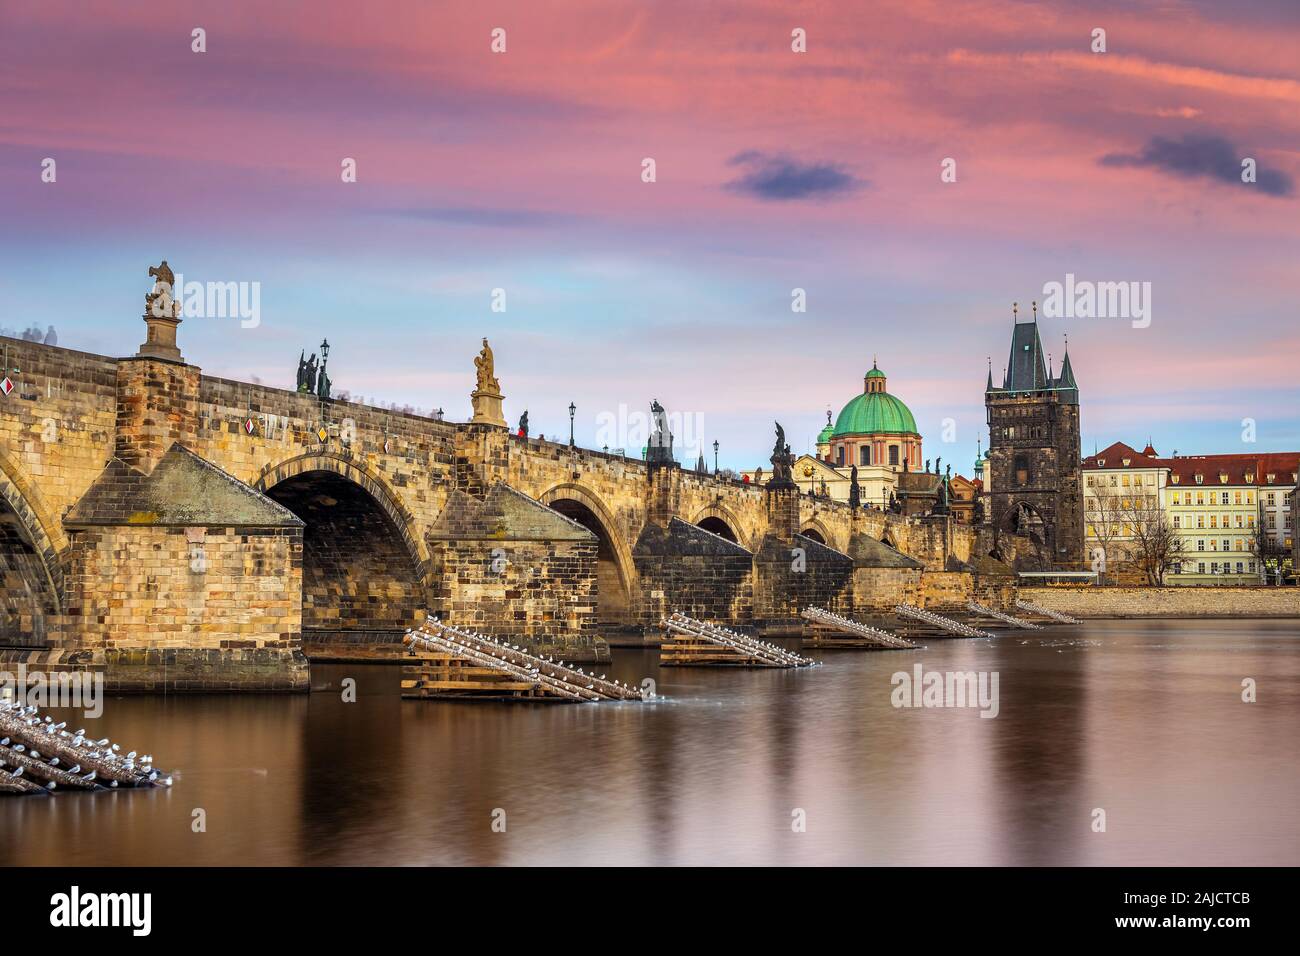 Prag, Tschechische Republik - Die weltberühmte Karlsbrücke (Karluv most) mit einem schönen violetten Himmel und Sonnenuntergang auf einer winterlichen Nachmittag Stockfoto